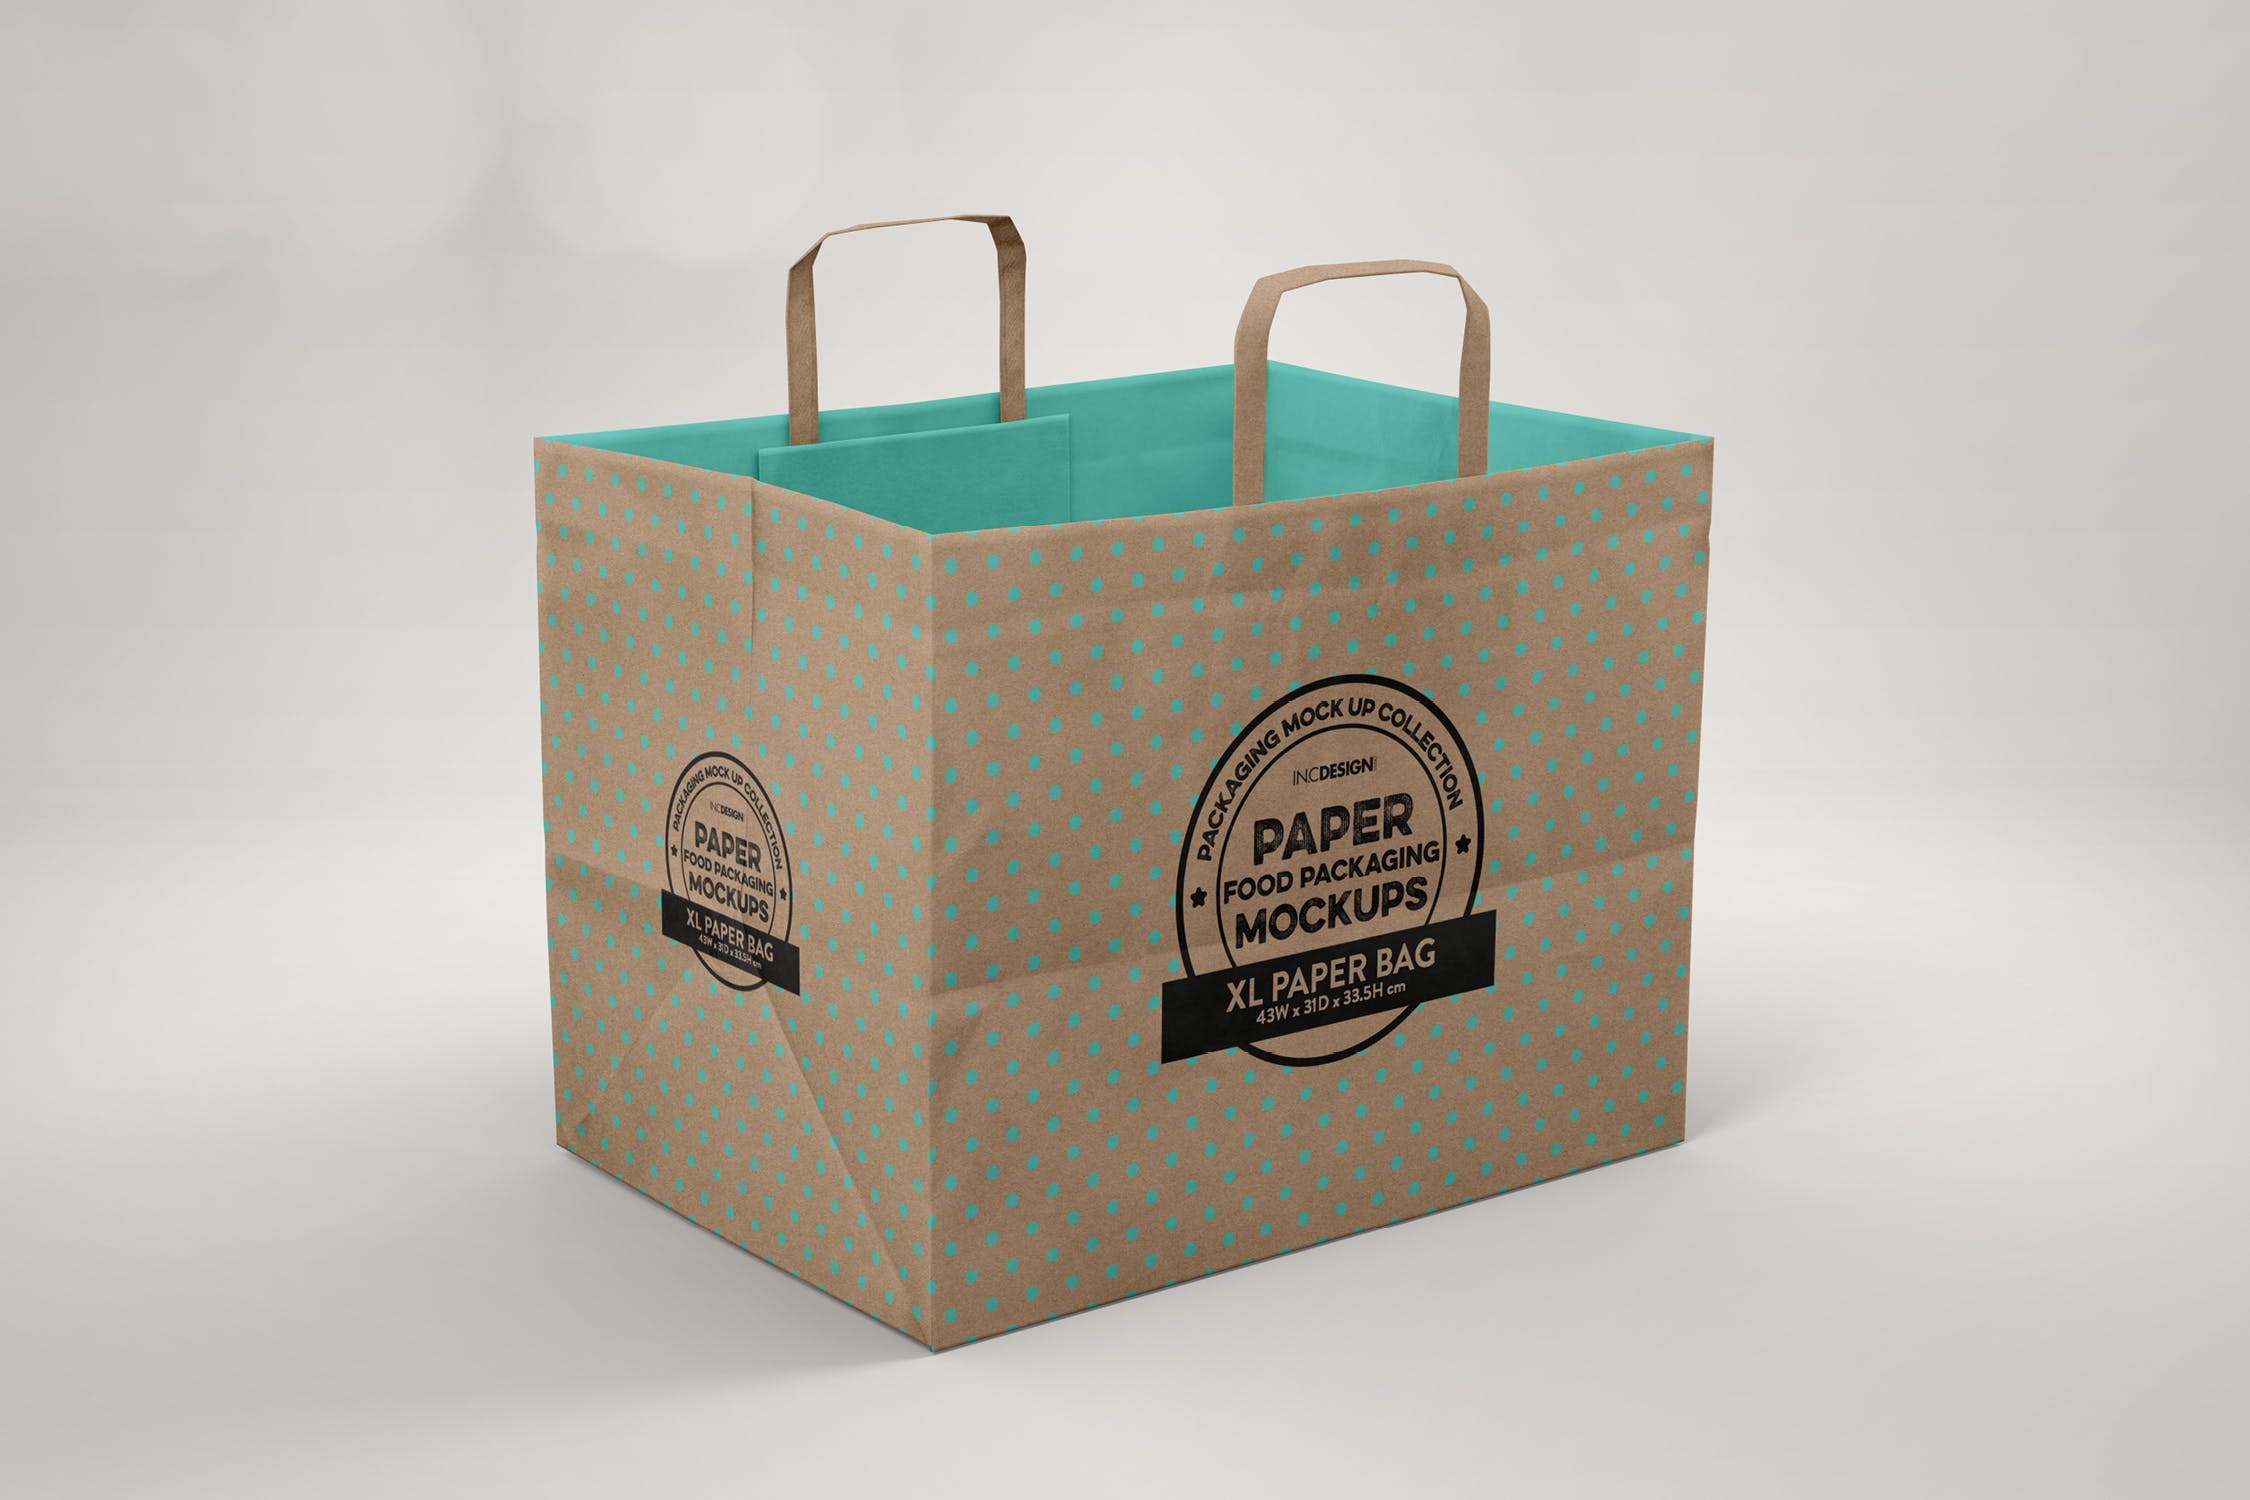 加大型购物纸袋设计图素材库精选模板 XL Paper Bags with Flat Handles Mockup插图(1)